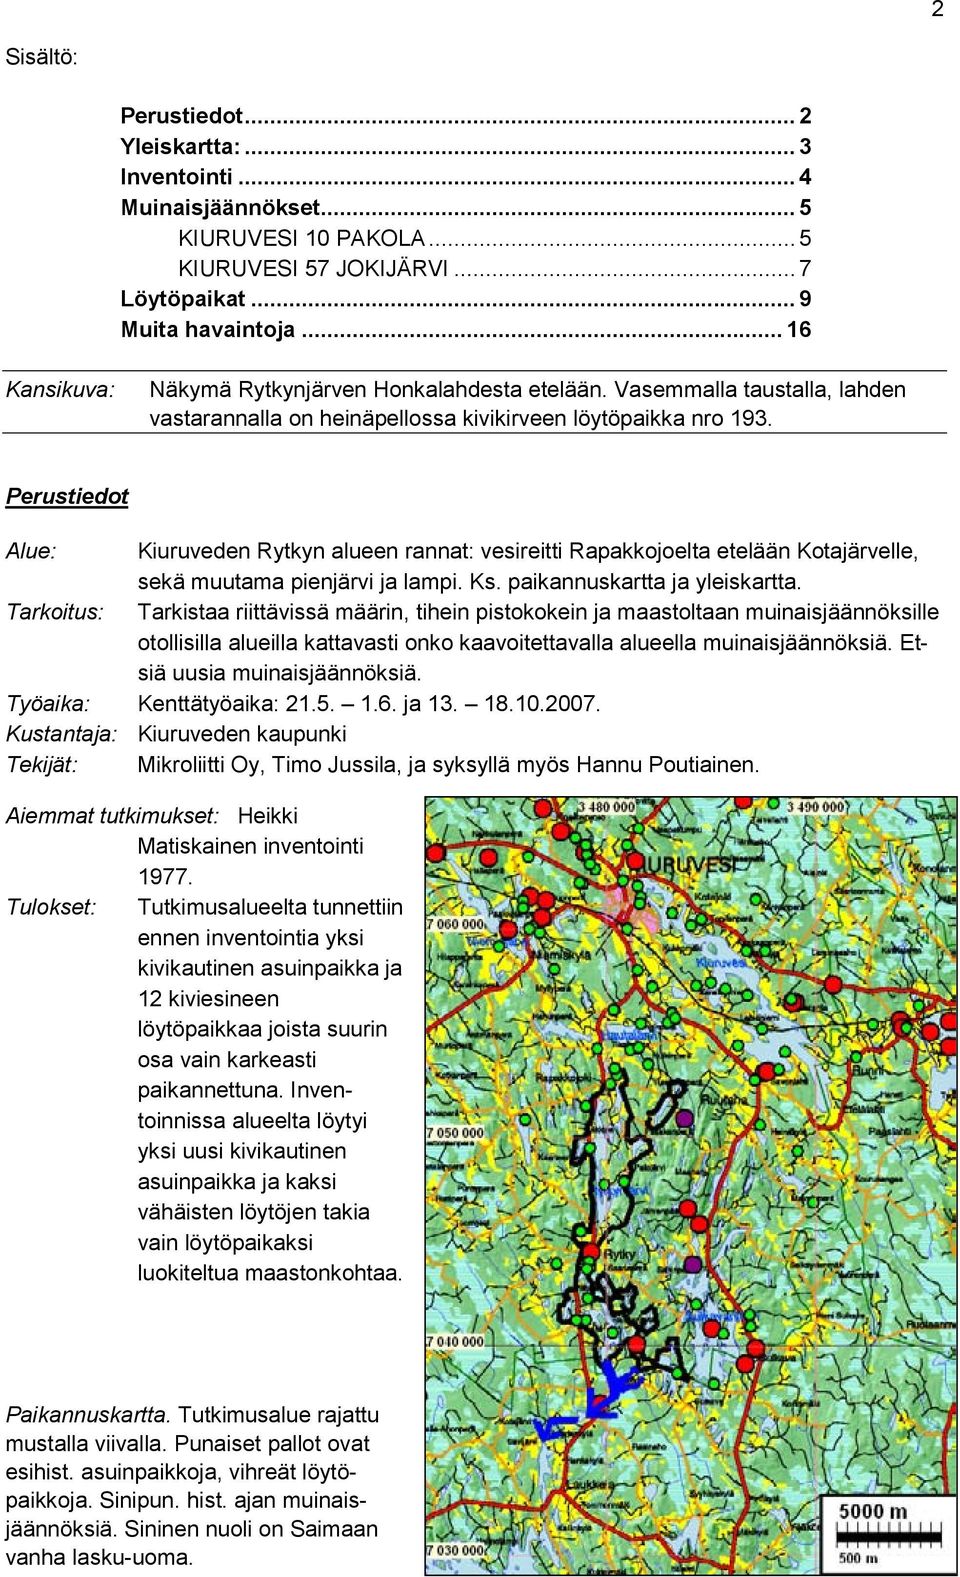 Perustiedot Alue: Kiuruveden Rytkyn alueen rannat: vesireitti Rapakkojoelta etelään Kotajärvelle, sekä muutama pienjärvi ja lampi. Ks. paikannuskartta ja yleiskartta.